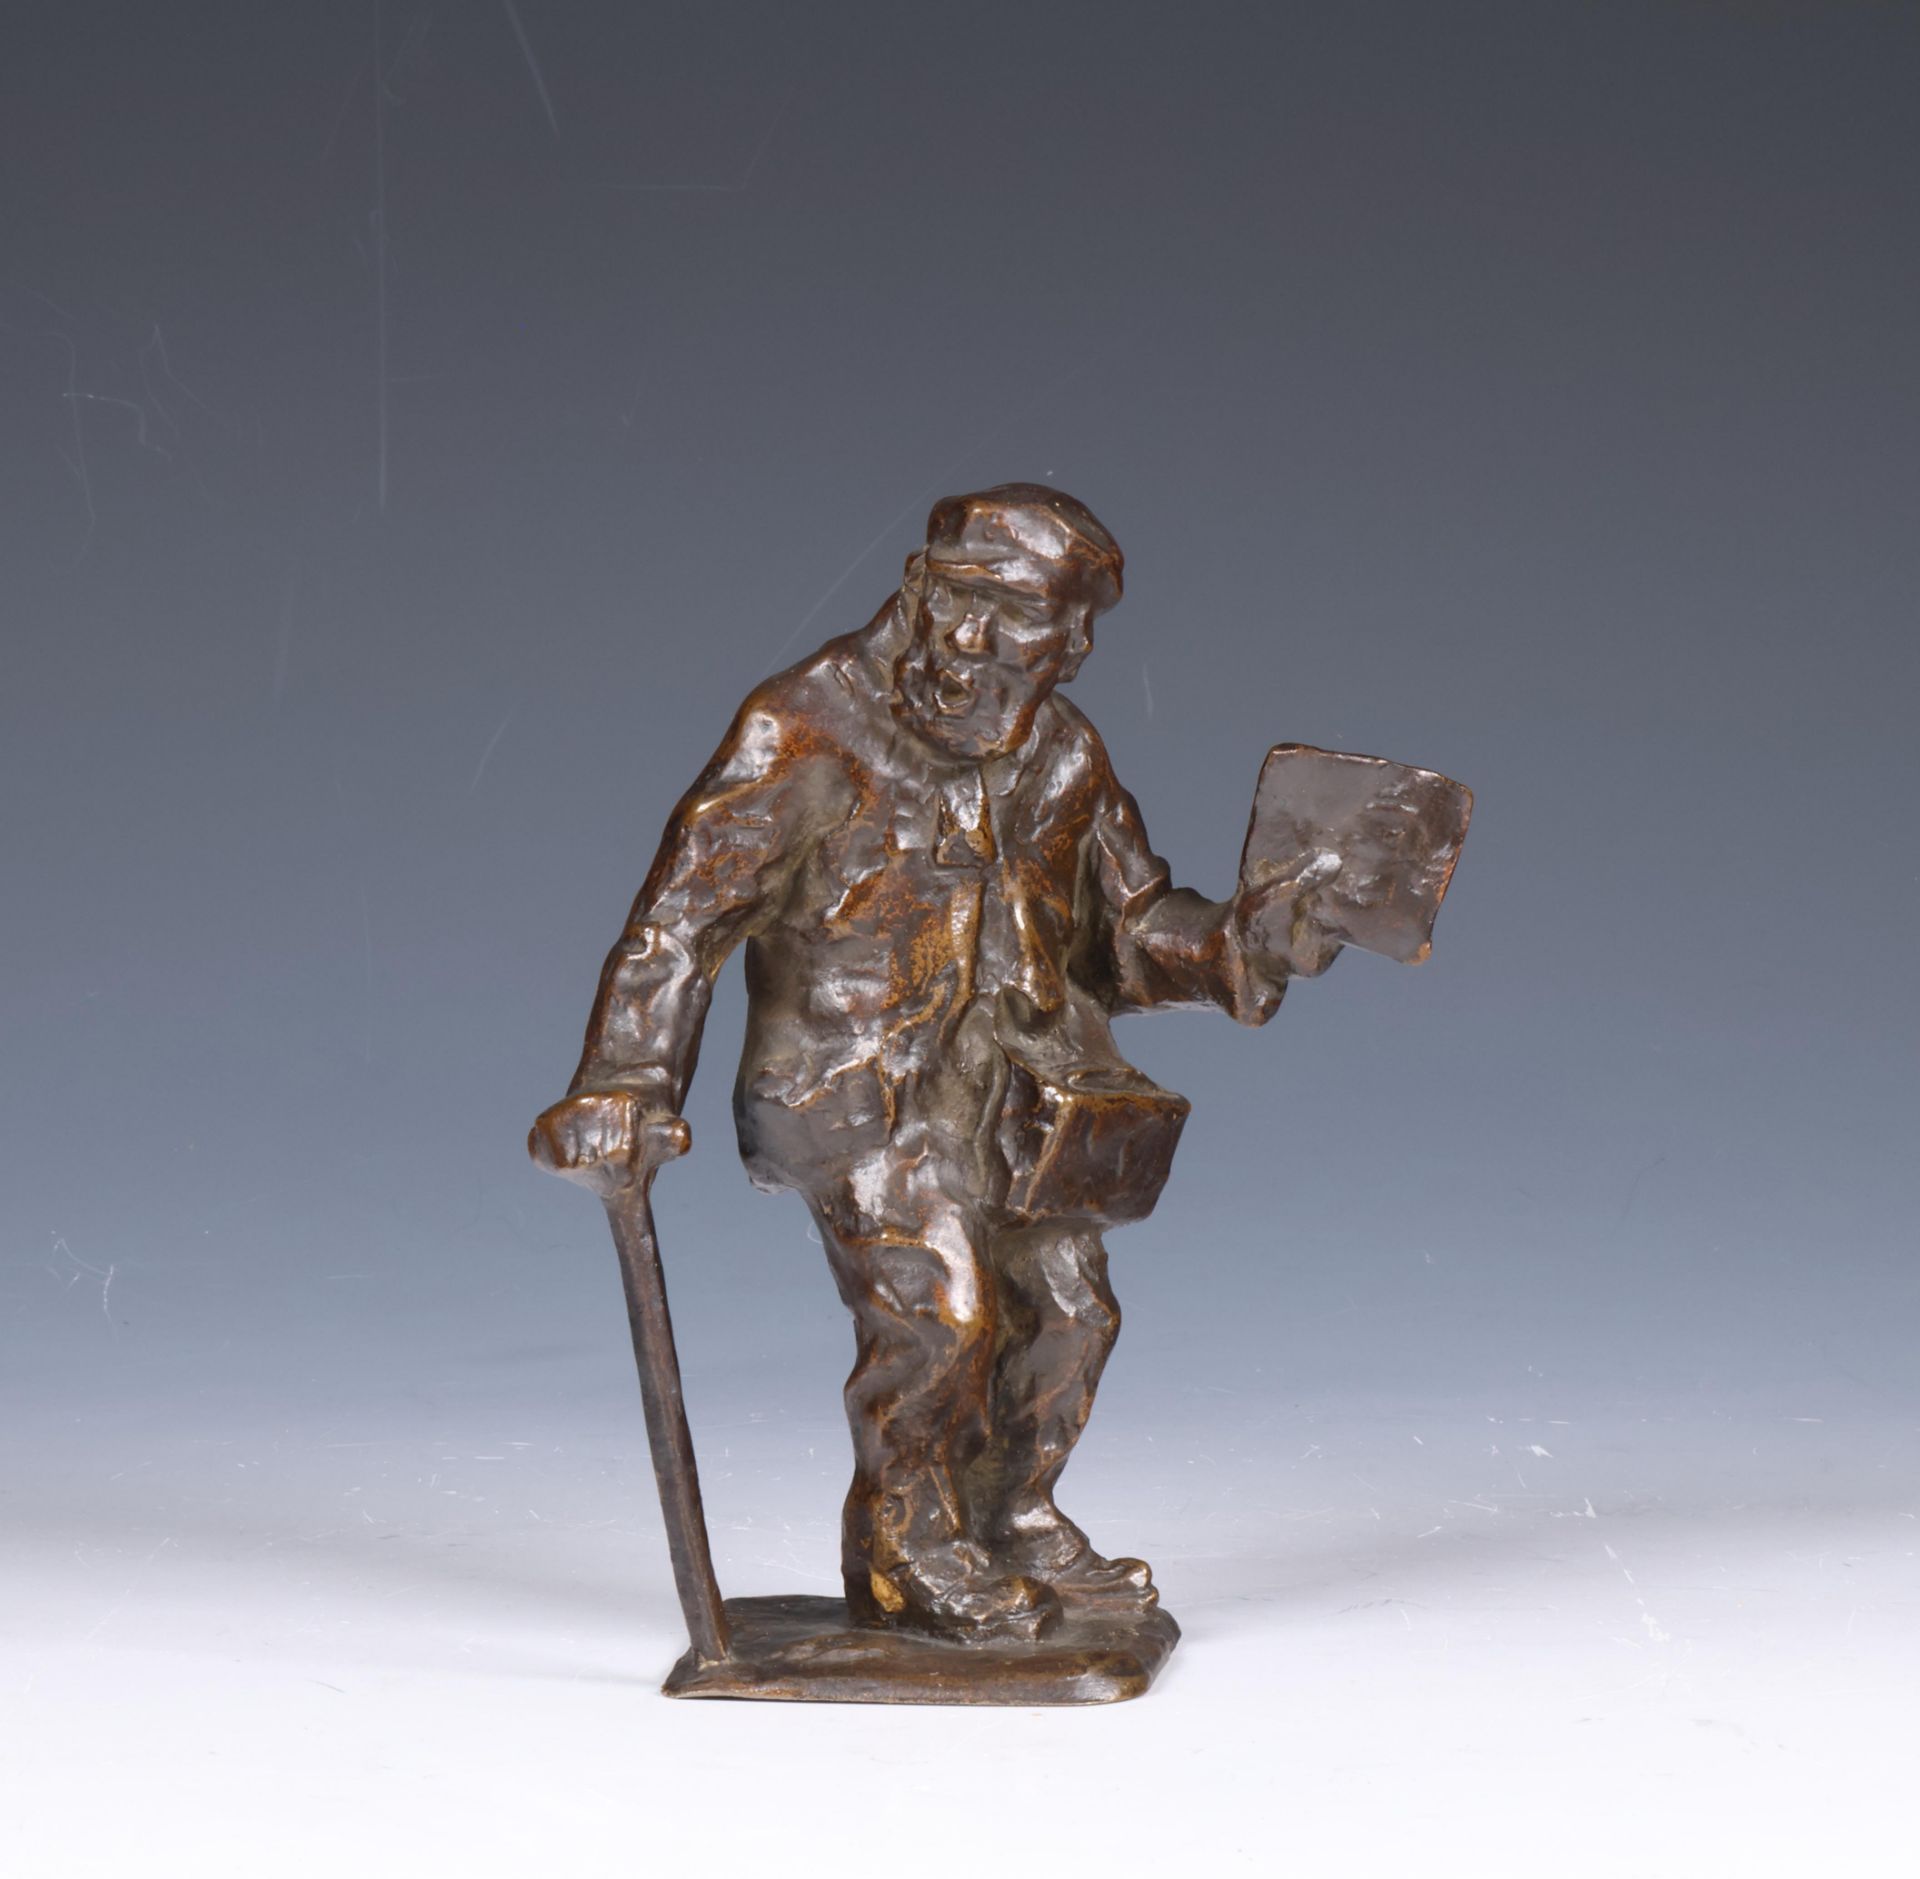 Mogelijk Chris van der Hoef (1875-1933), bruin gepatineerd bronzen sculptuur 'krantenverkoper', ca.